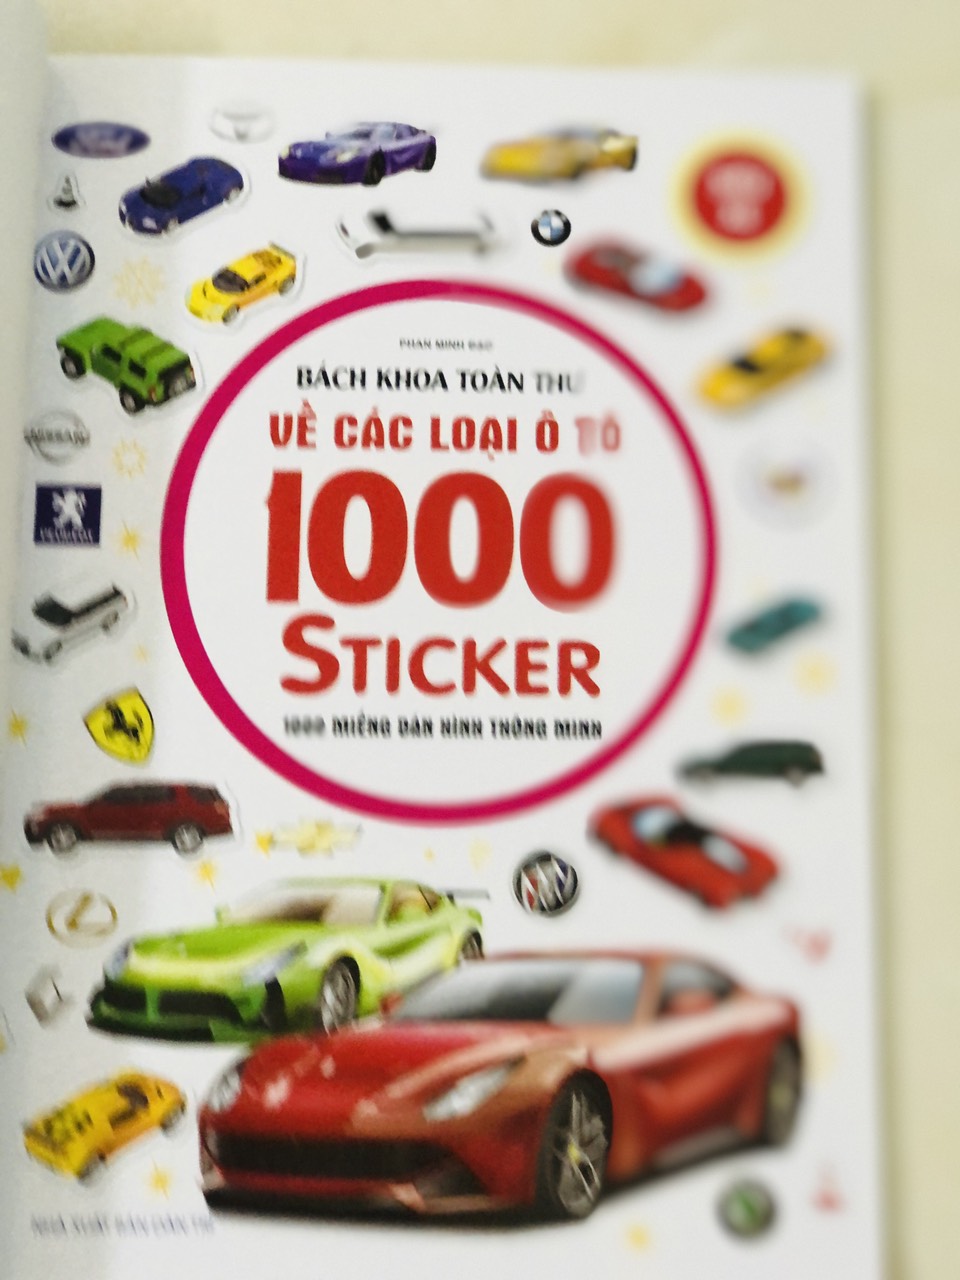 Sách - Bách khoa toàn thư về các loại ô tô - 1000 miếng dán hình thông minh - Siêu xe